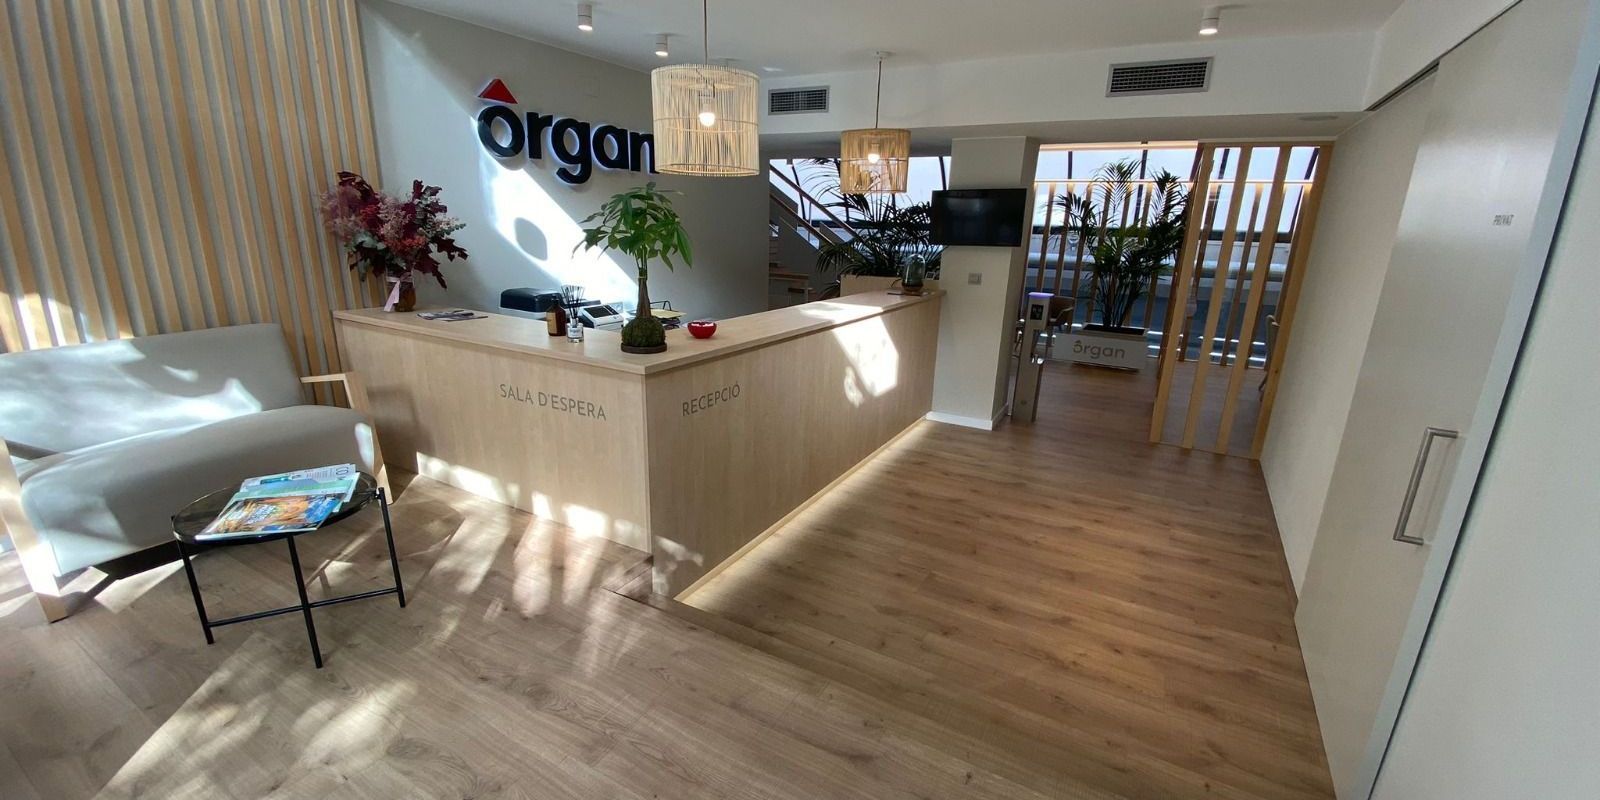 Organ. Immobiliària fundada el 1967. Aquest any han renovat la imatge i l’espai, i està en mans de la segona generació.